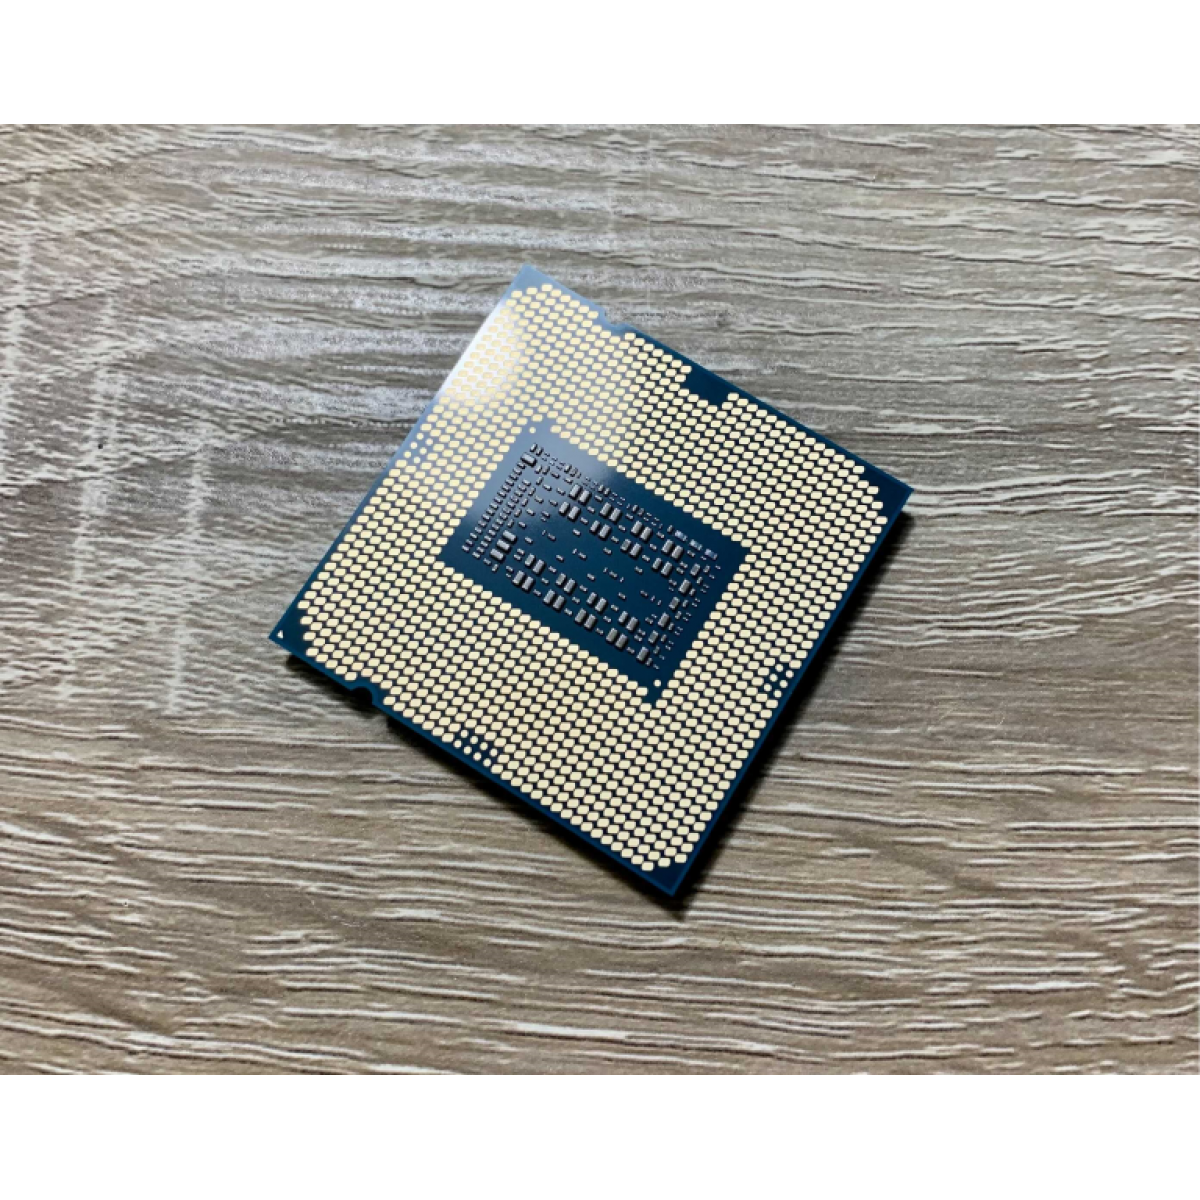 CPU Intel Core i7 11700K 3.6GHz turbo up to 5Ghz | 8 nhân 16 luồng | 16MB Cache, 125W